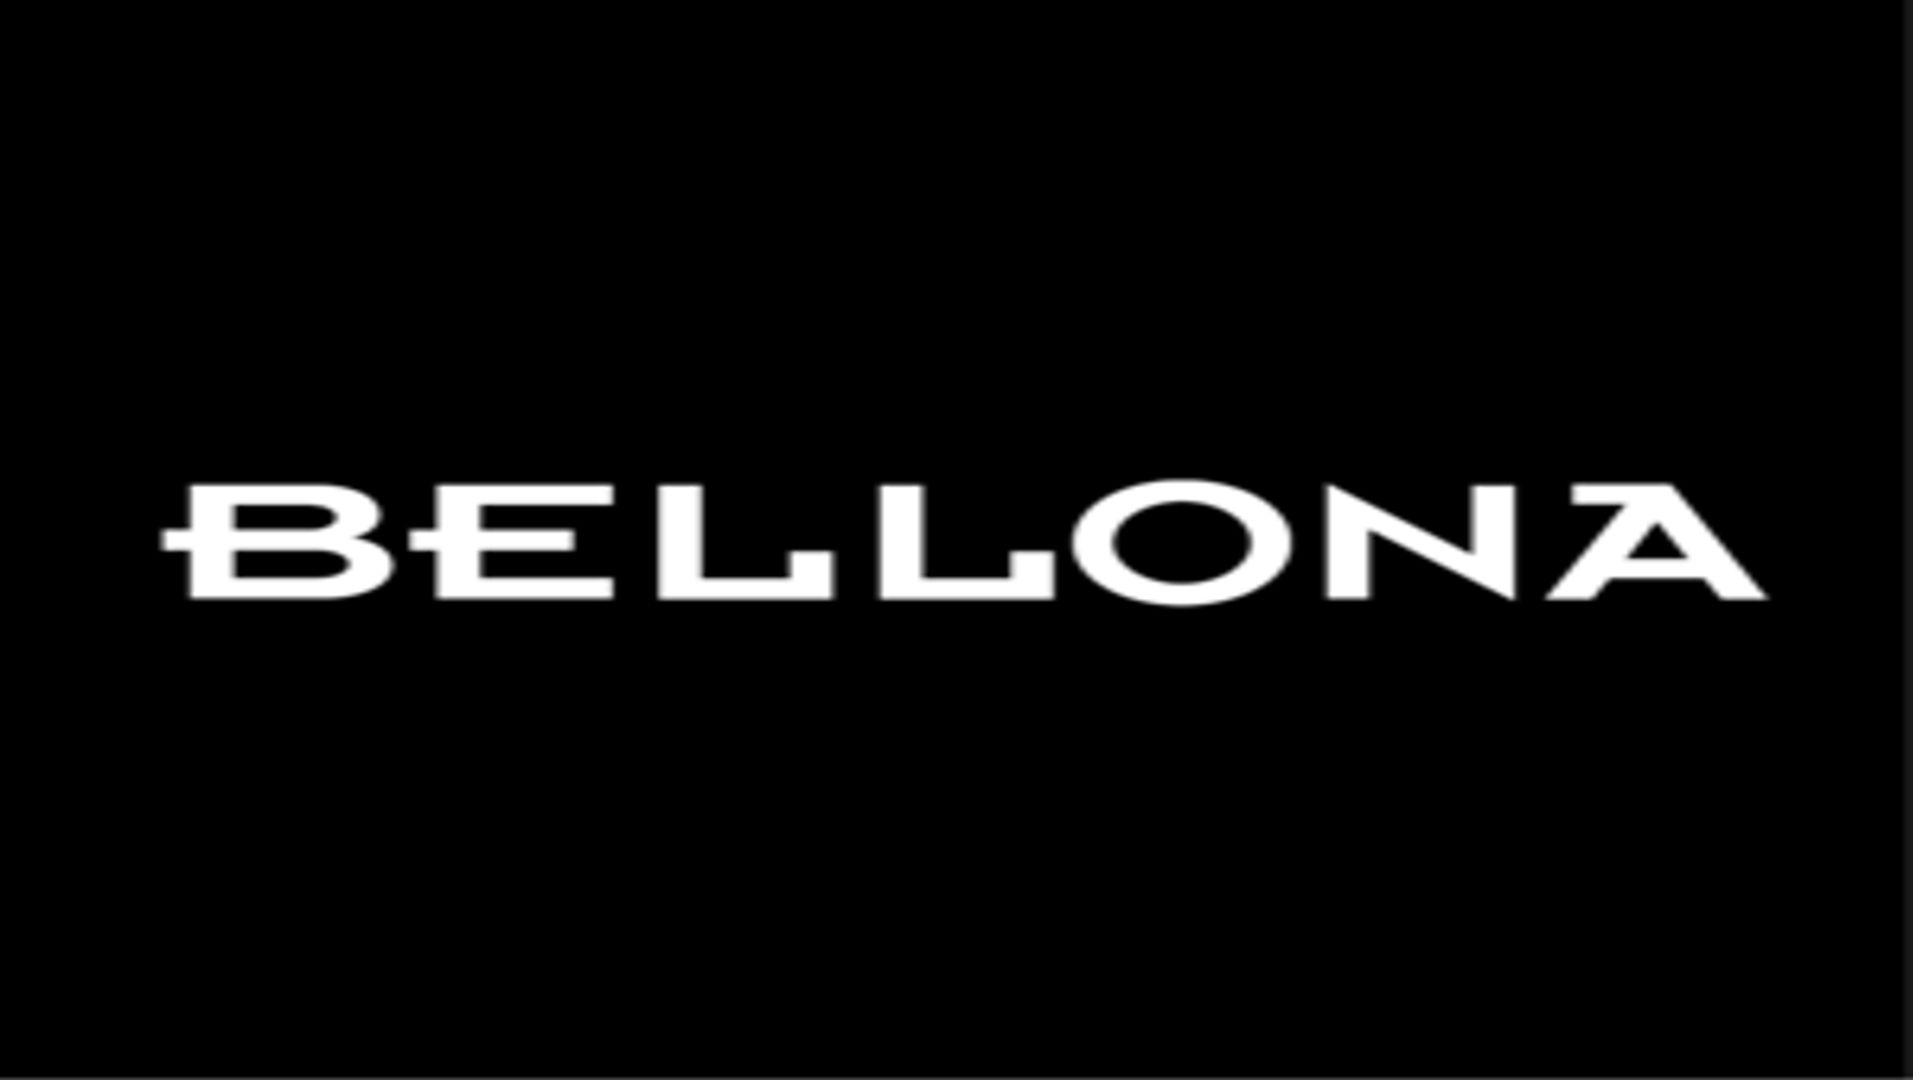 BELLONA,www.echonom.com